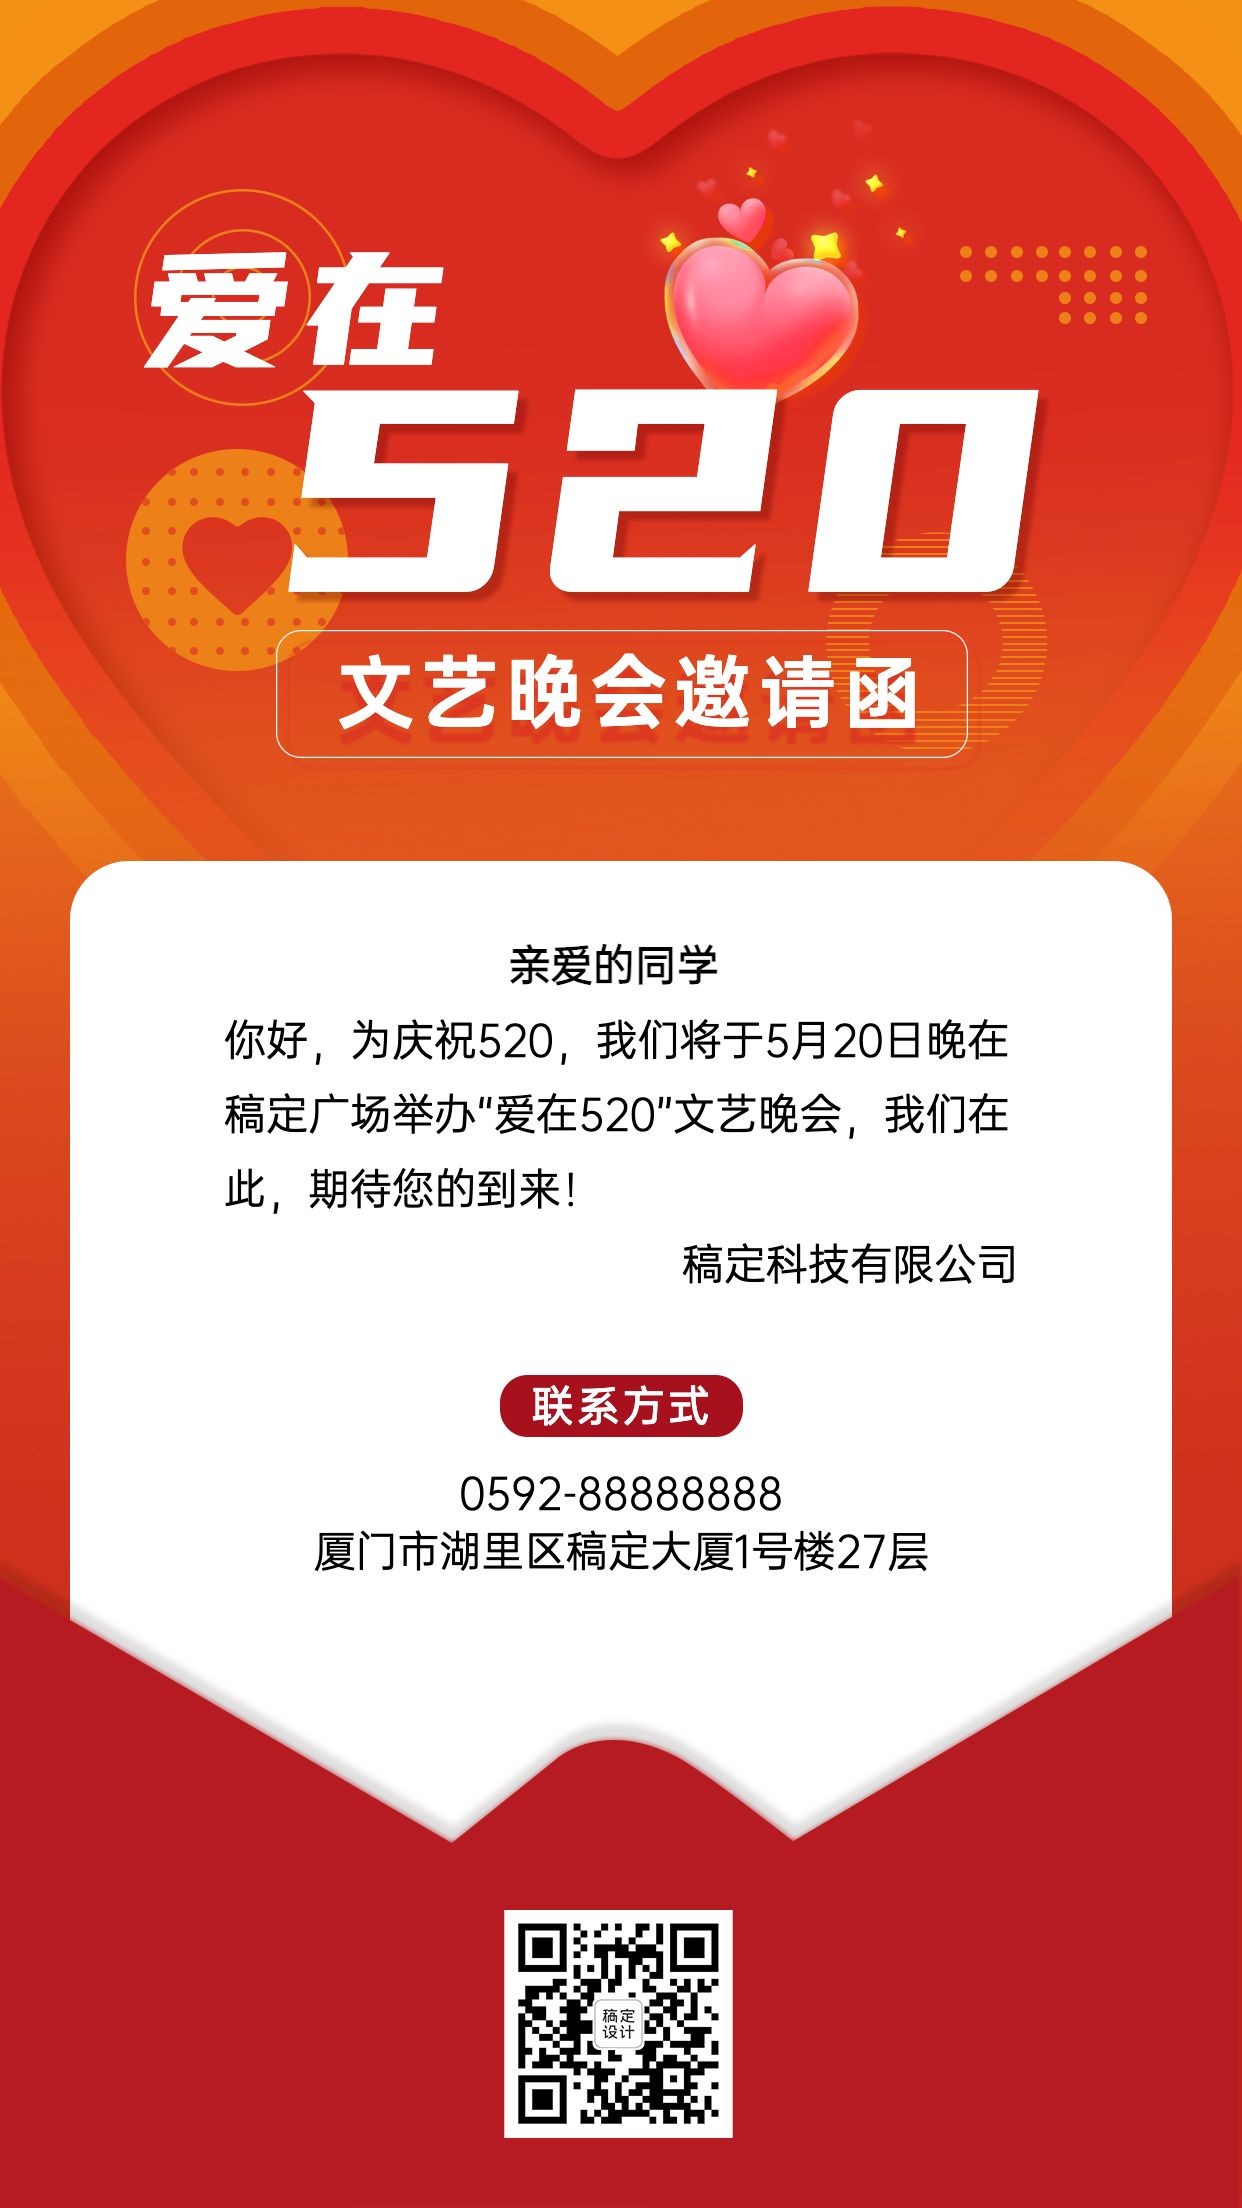 520情人节节日活动晚会邀请函排版手机海报